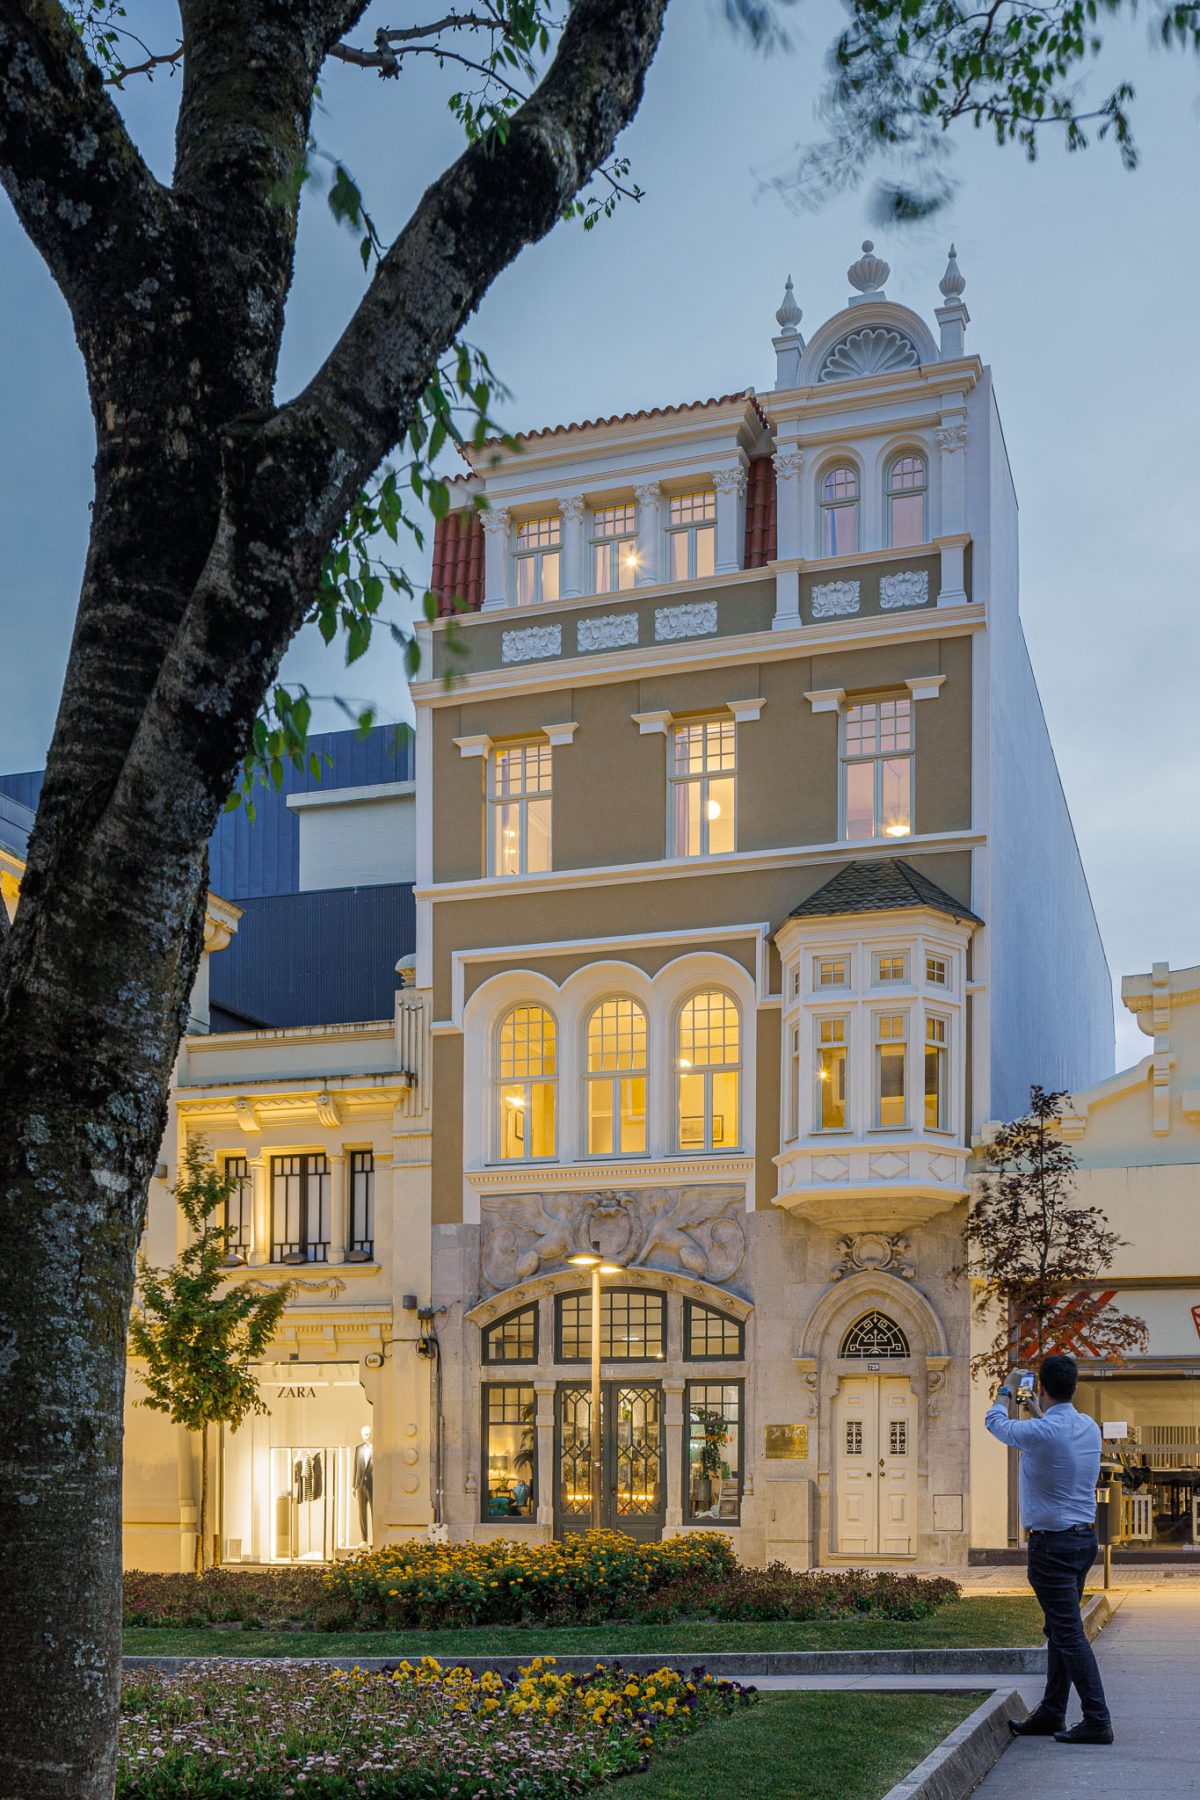 Hotel Villa Theatro em Braga com Arquitectura Arquitectos Aliado